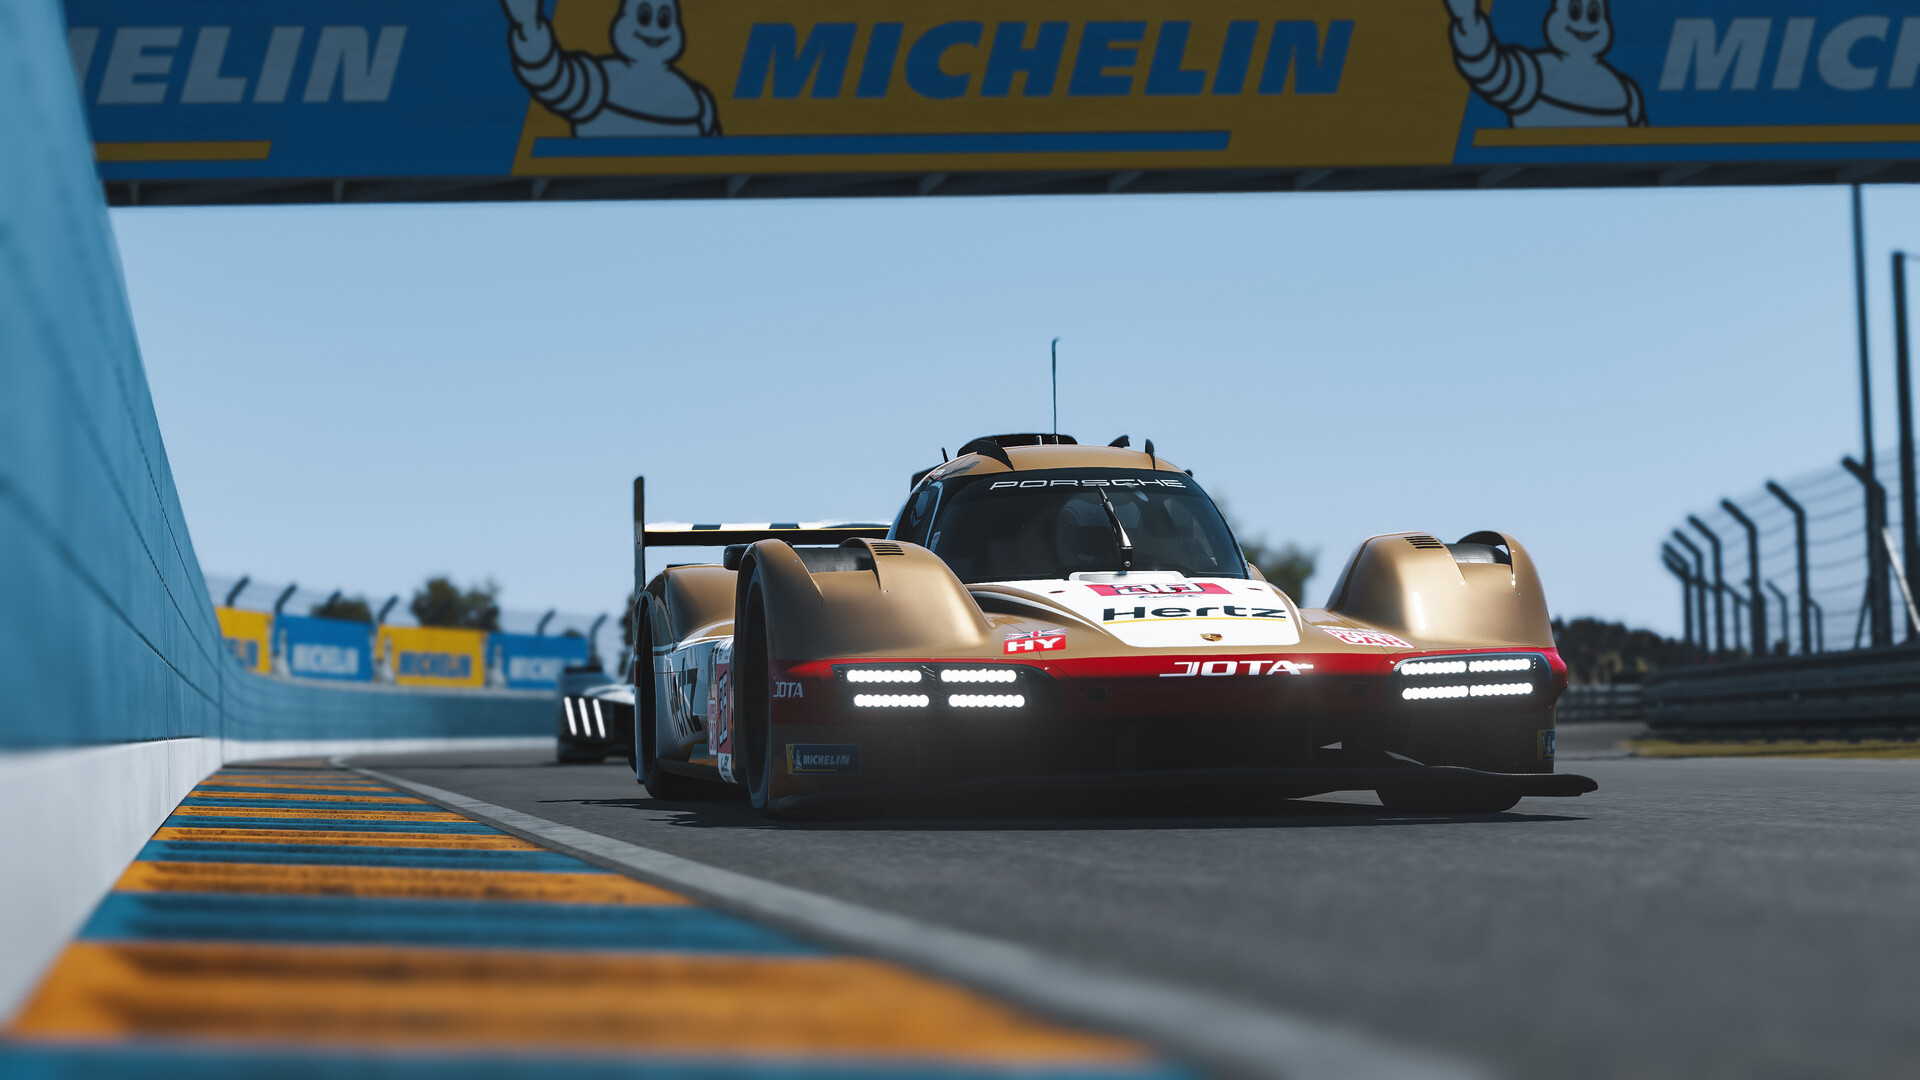 勒芒终极赛/Le Mans Ultimate配图3